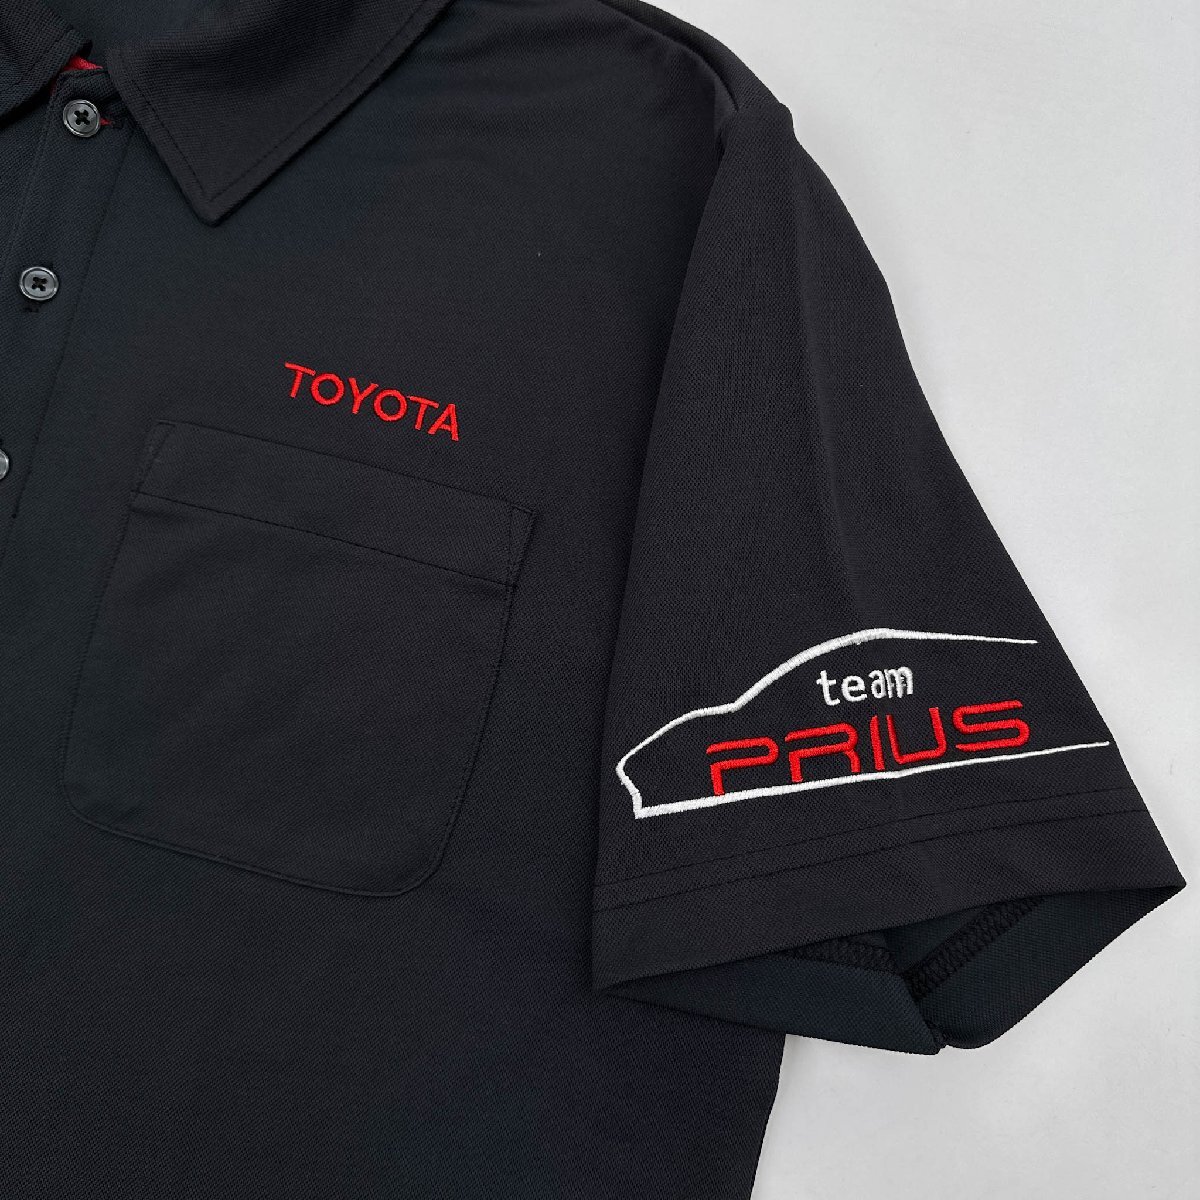  красивая вещь ◆TB UNIFASHION 【TOYOTA team PRIUS】 короткие рукава   сухой  ... рубашка   LL / мужской / Toyota  автомобиль  / Prius / большой  размер  